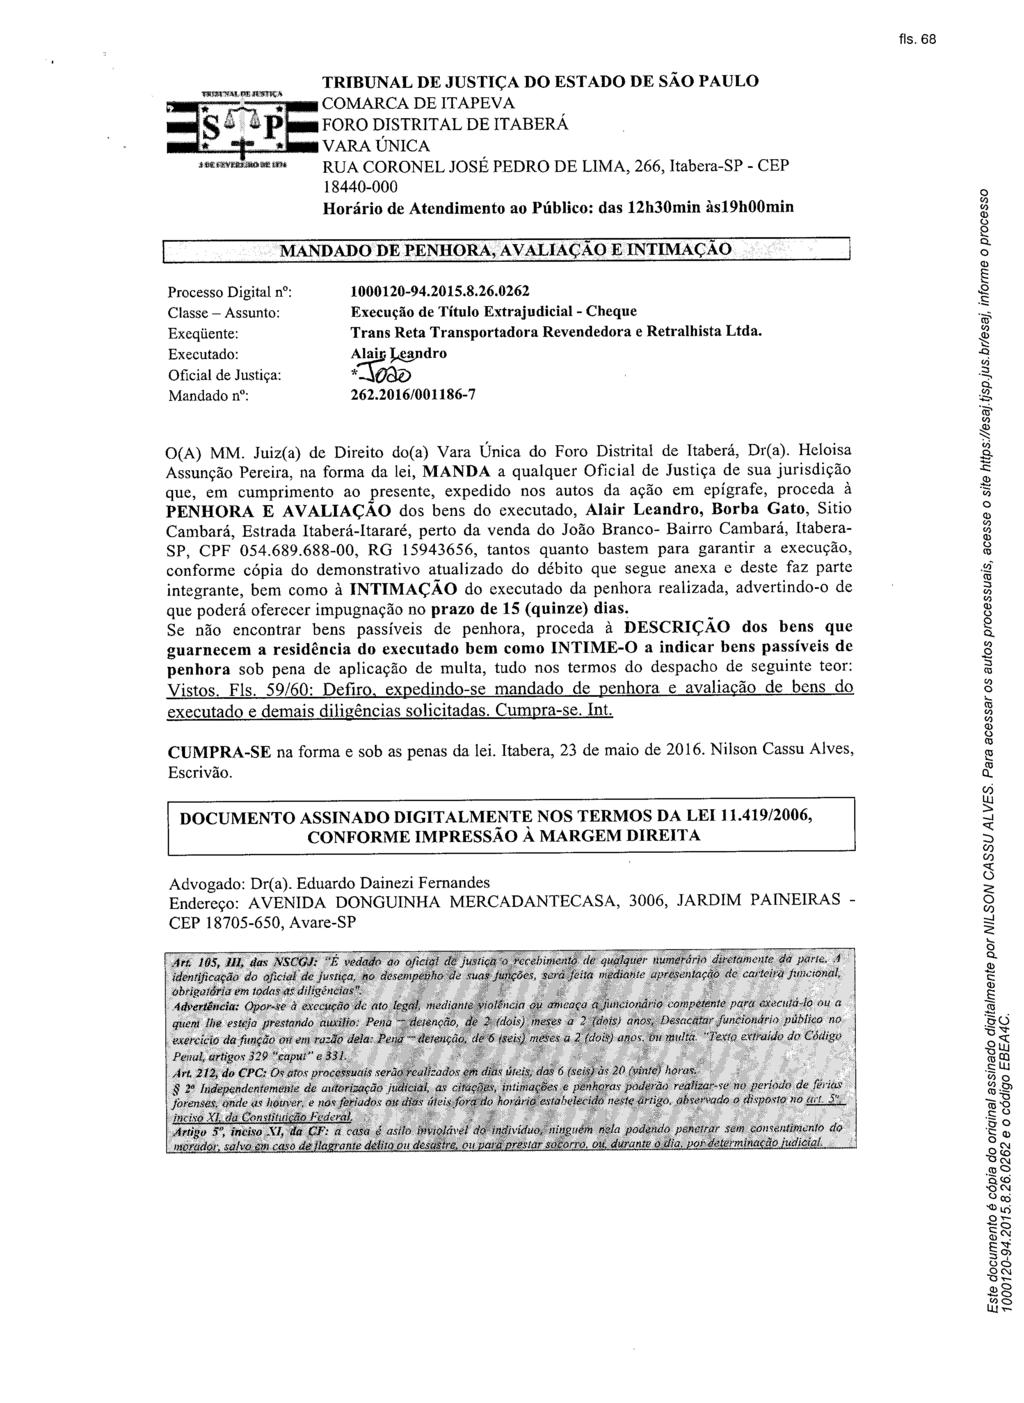 fls. 70 Este documento é cópia do original, assinado digitalmente por BRUNA HIEKO DE OLIVEIRA TAKENAGA, liberado nos autos em 06/06/2016 às 15:09.